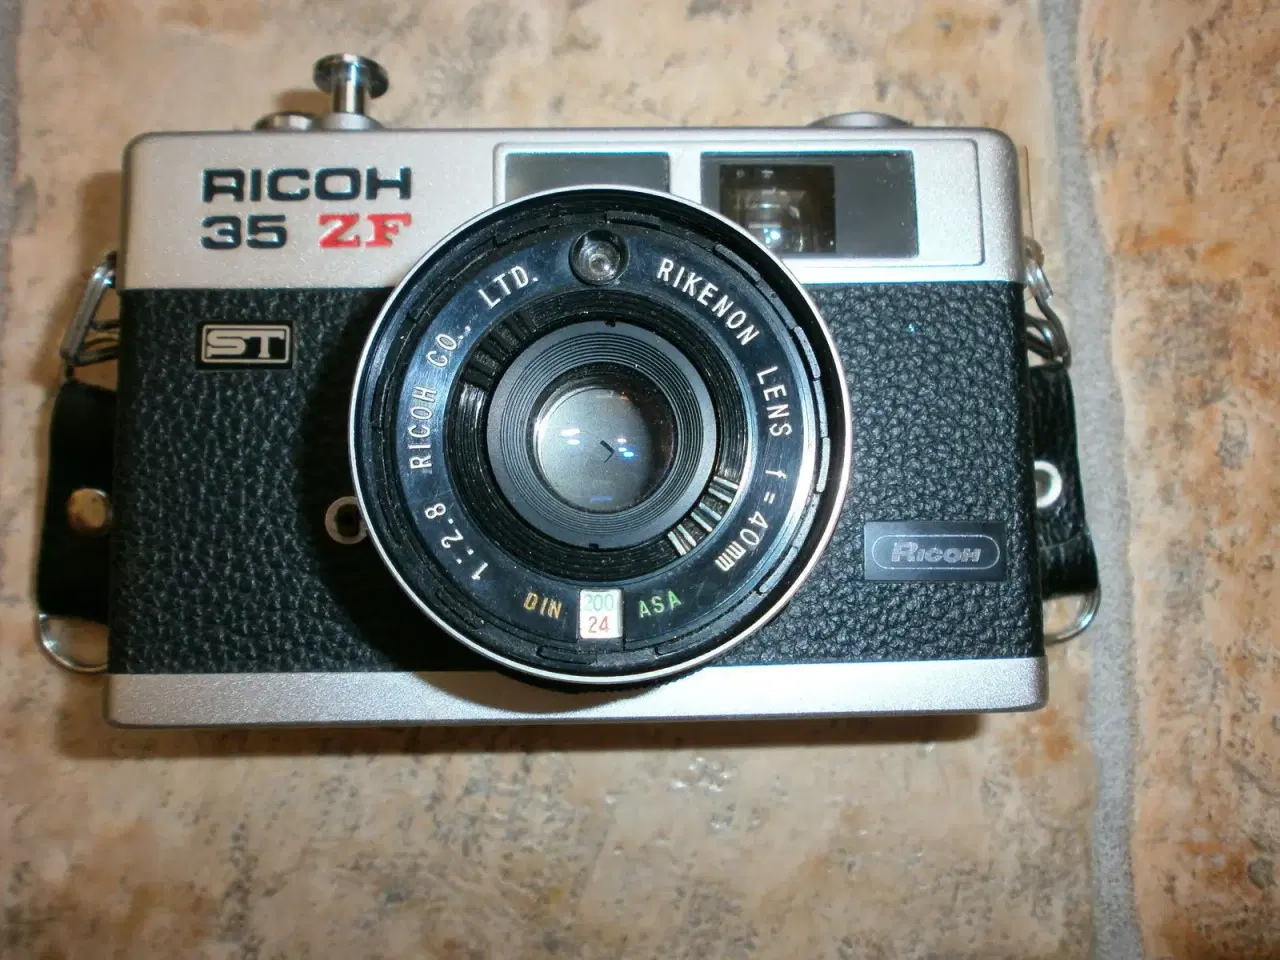 Billede 1 - Ricoh 35 ZF - Vintage kamera